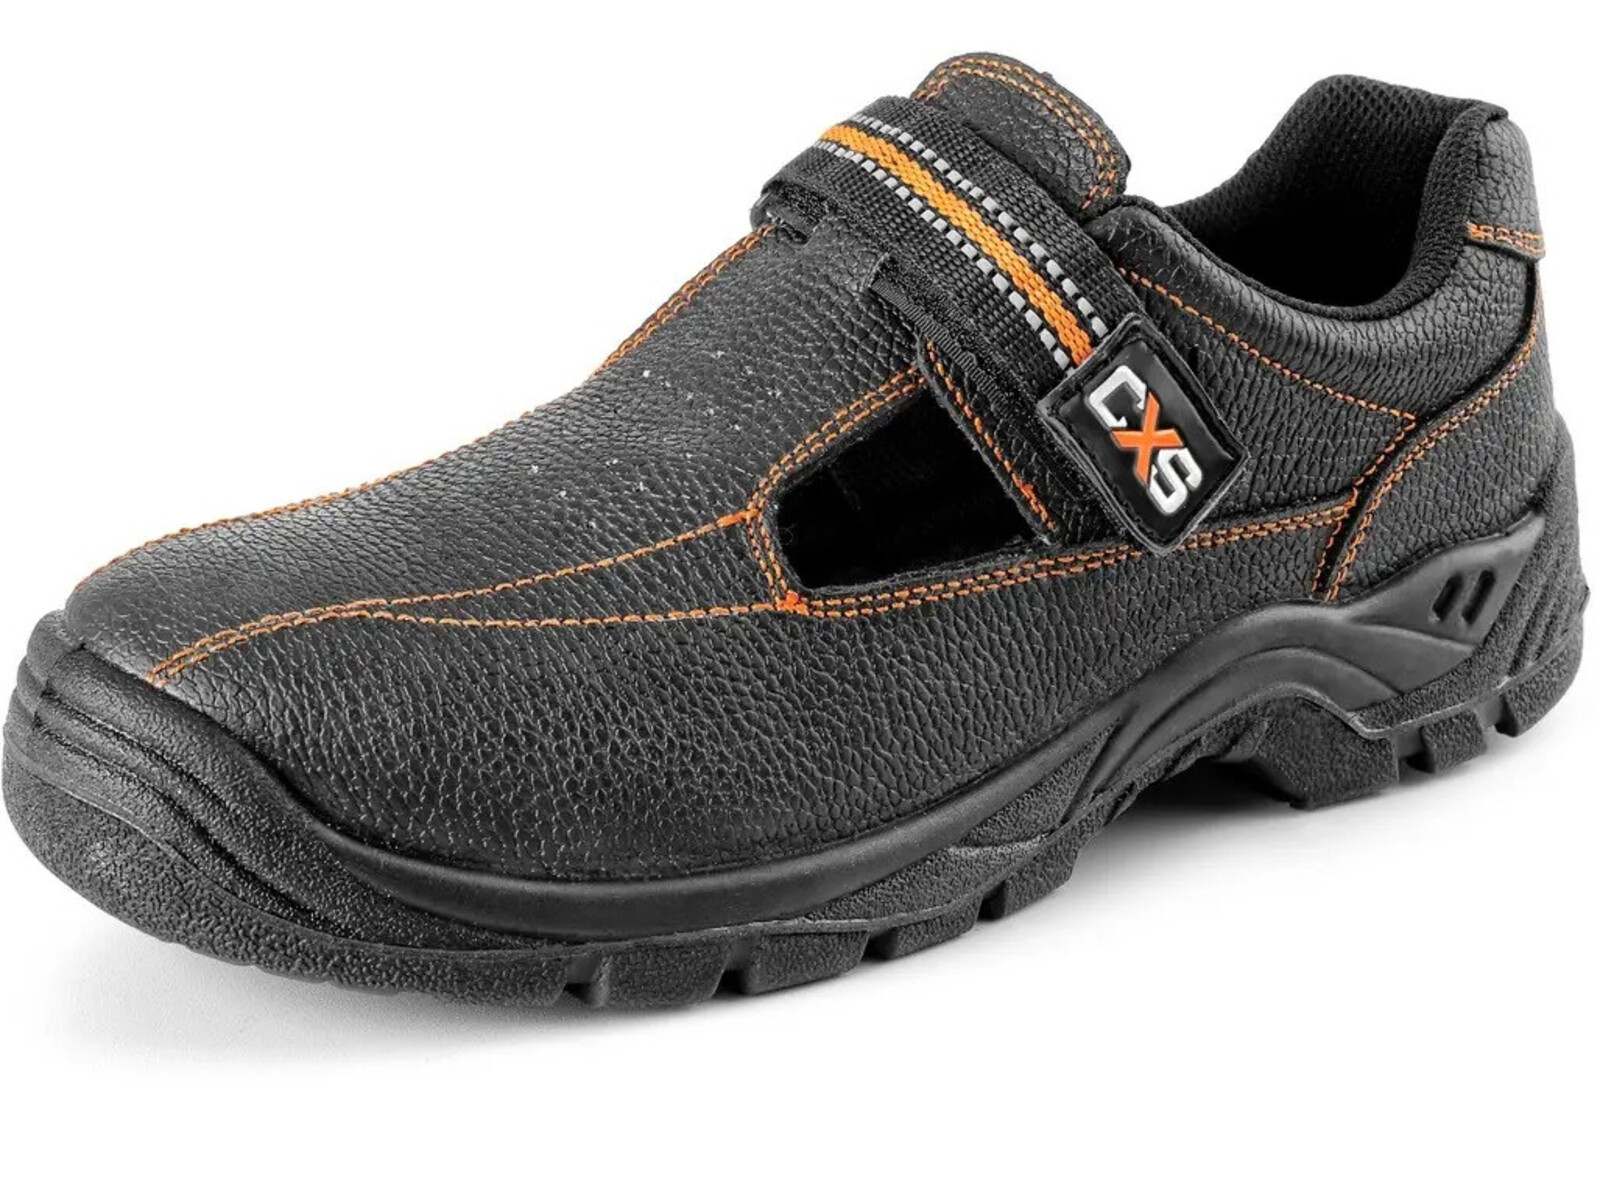 Bezpečnostné sandále CXS Stone Nefrit S1 SRC - veľkosť: 41, farba: čierna/oranžová